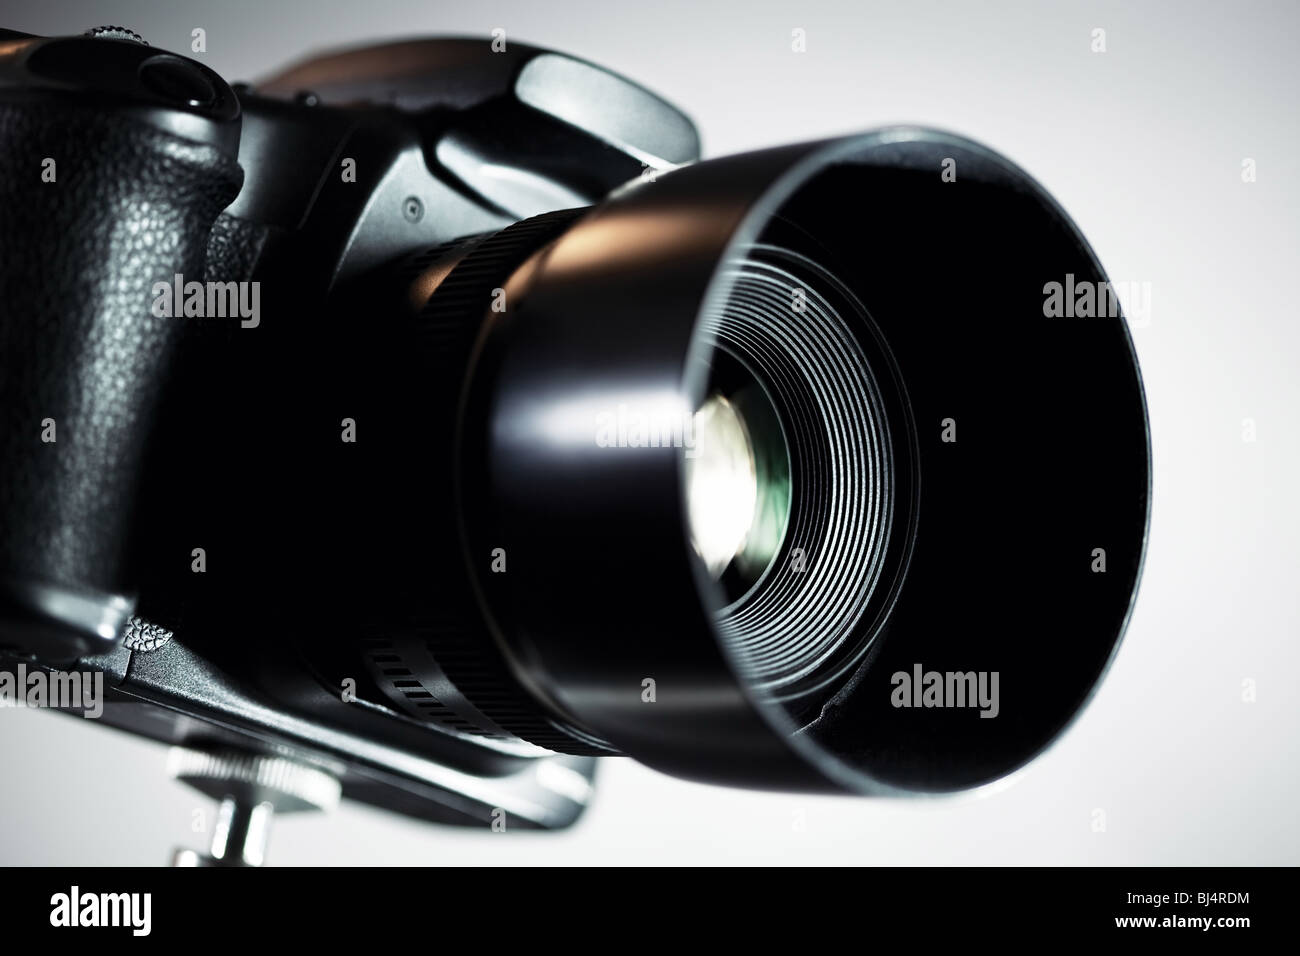 Reflex digitale professionale fotocamera su sfondo grigio. Foto Stock